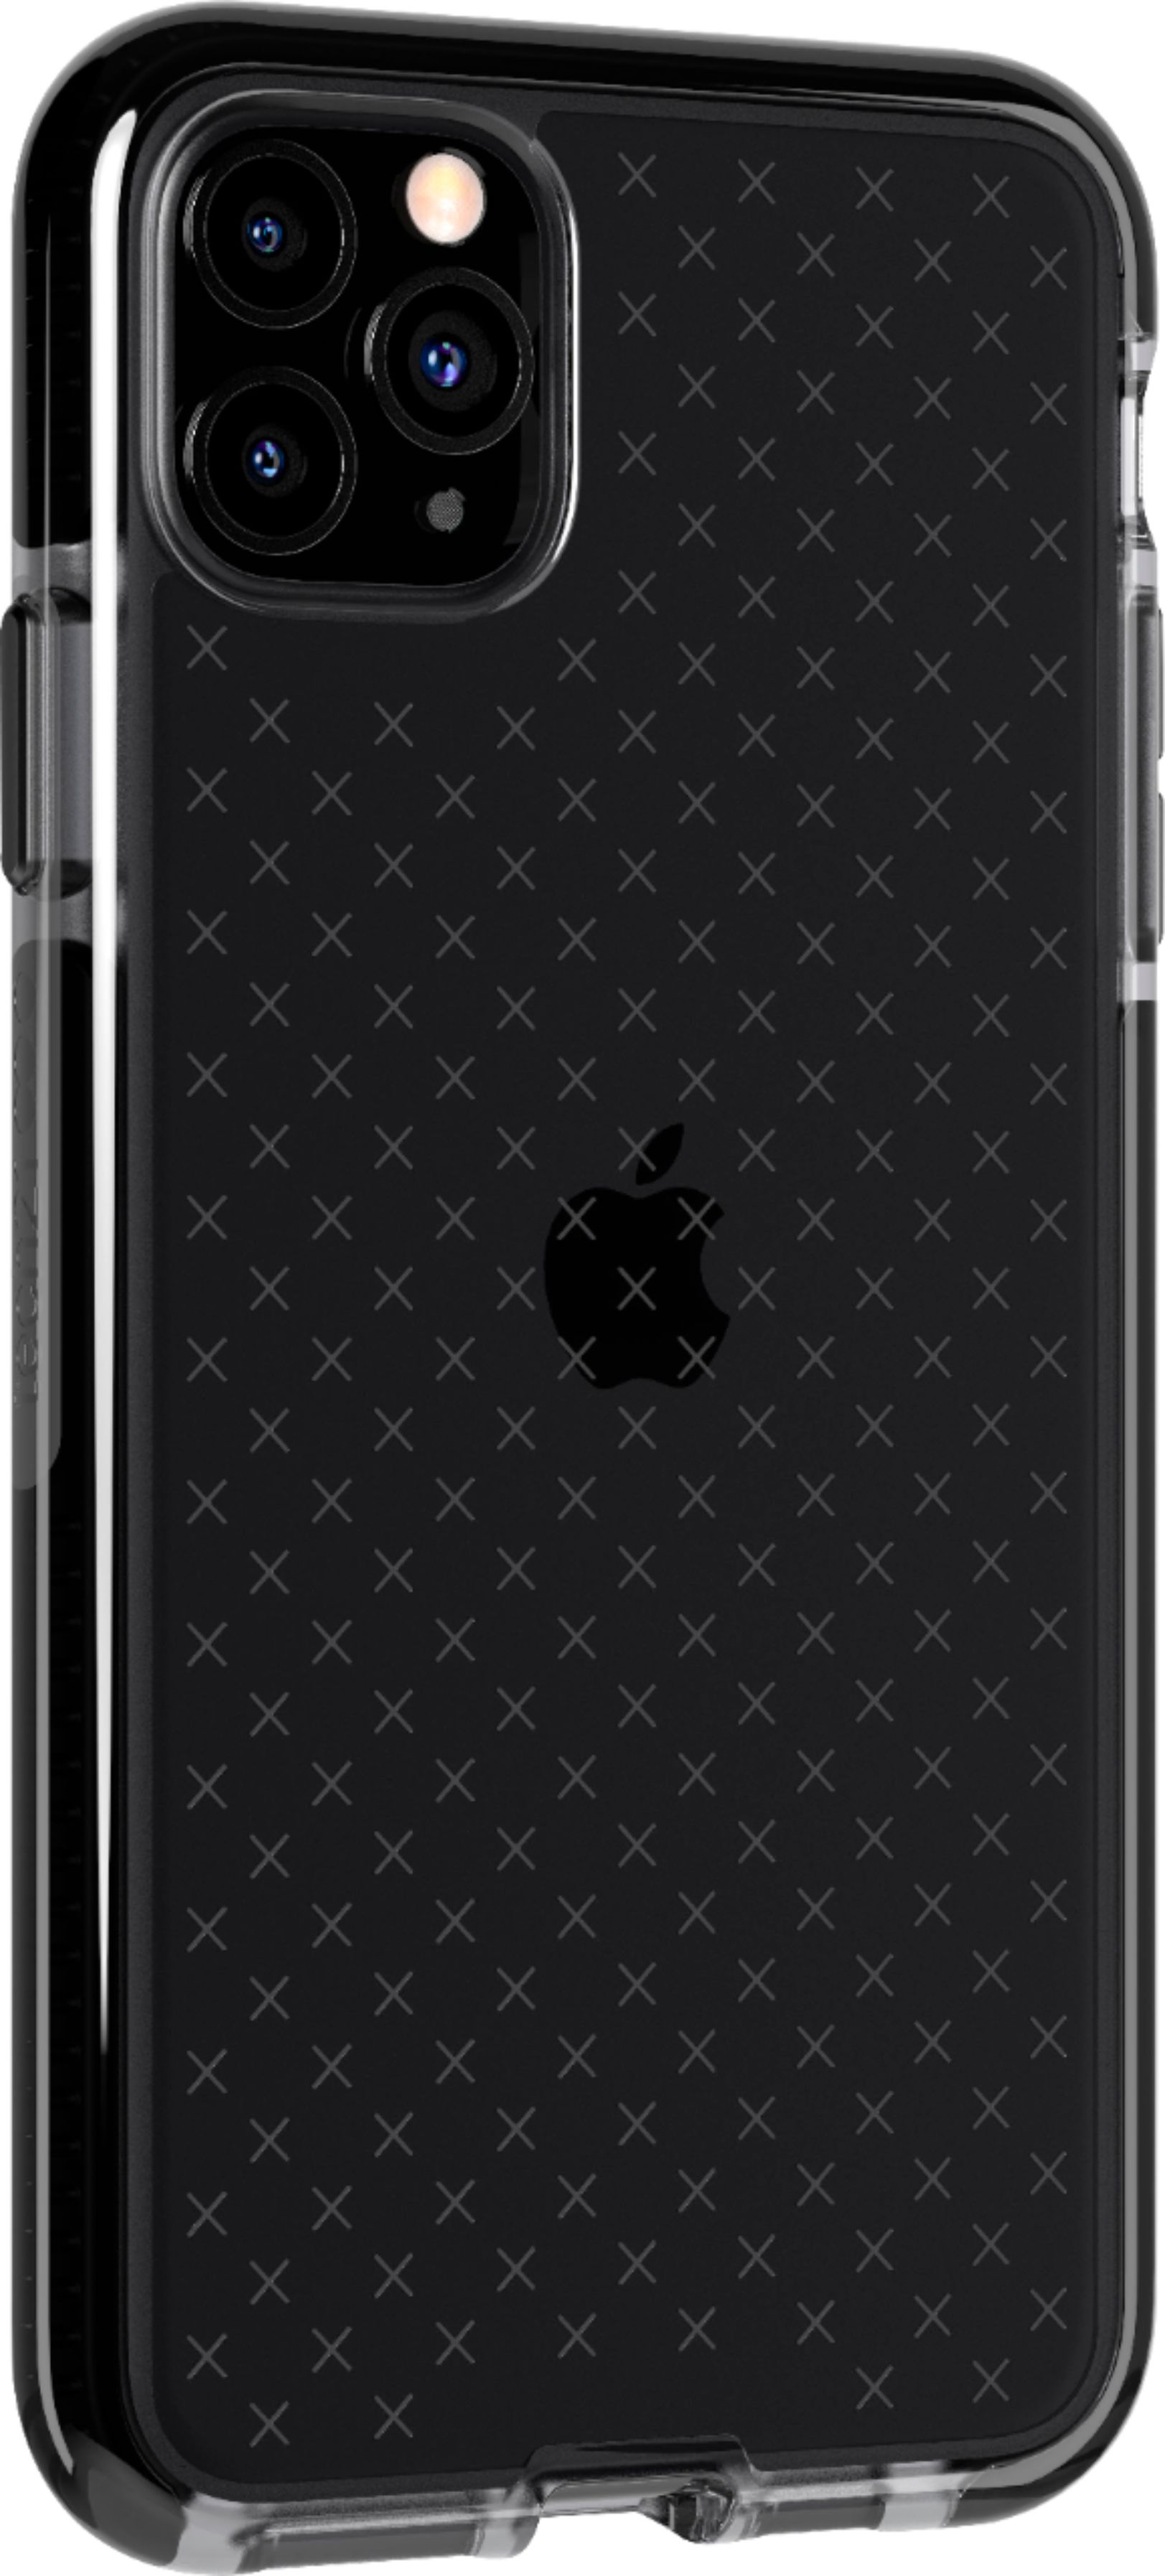 Tech21 - Evo Check Case for Apple® iPhone® 11 Pro Max - Smokey/Black